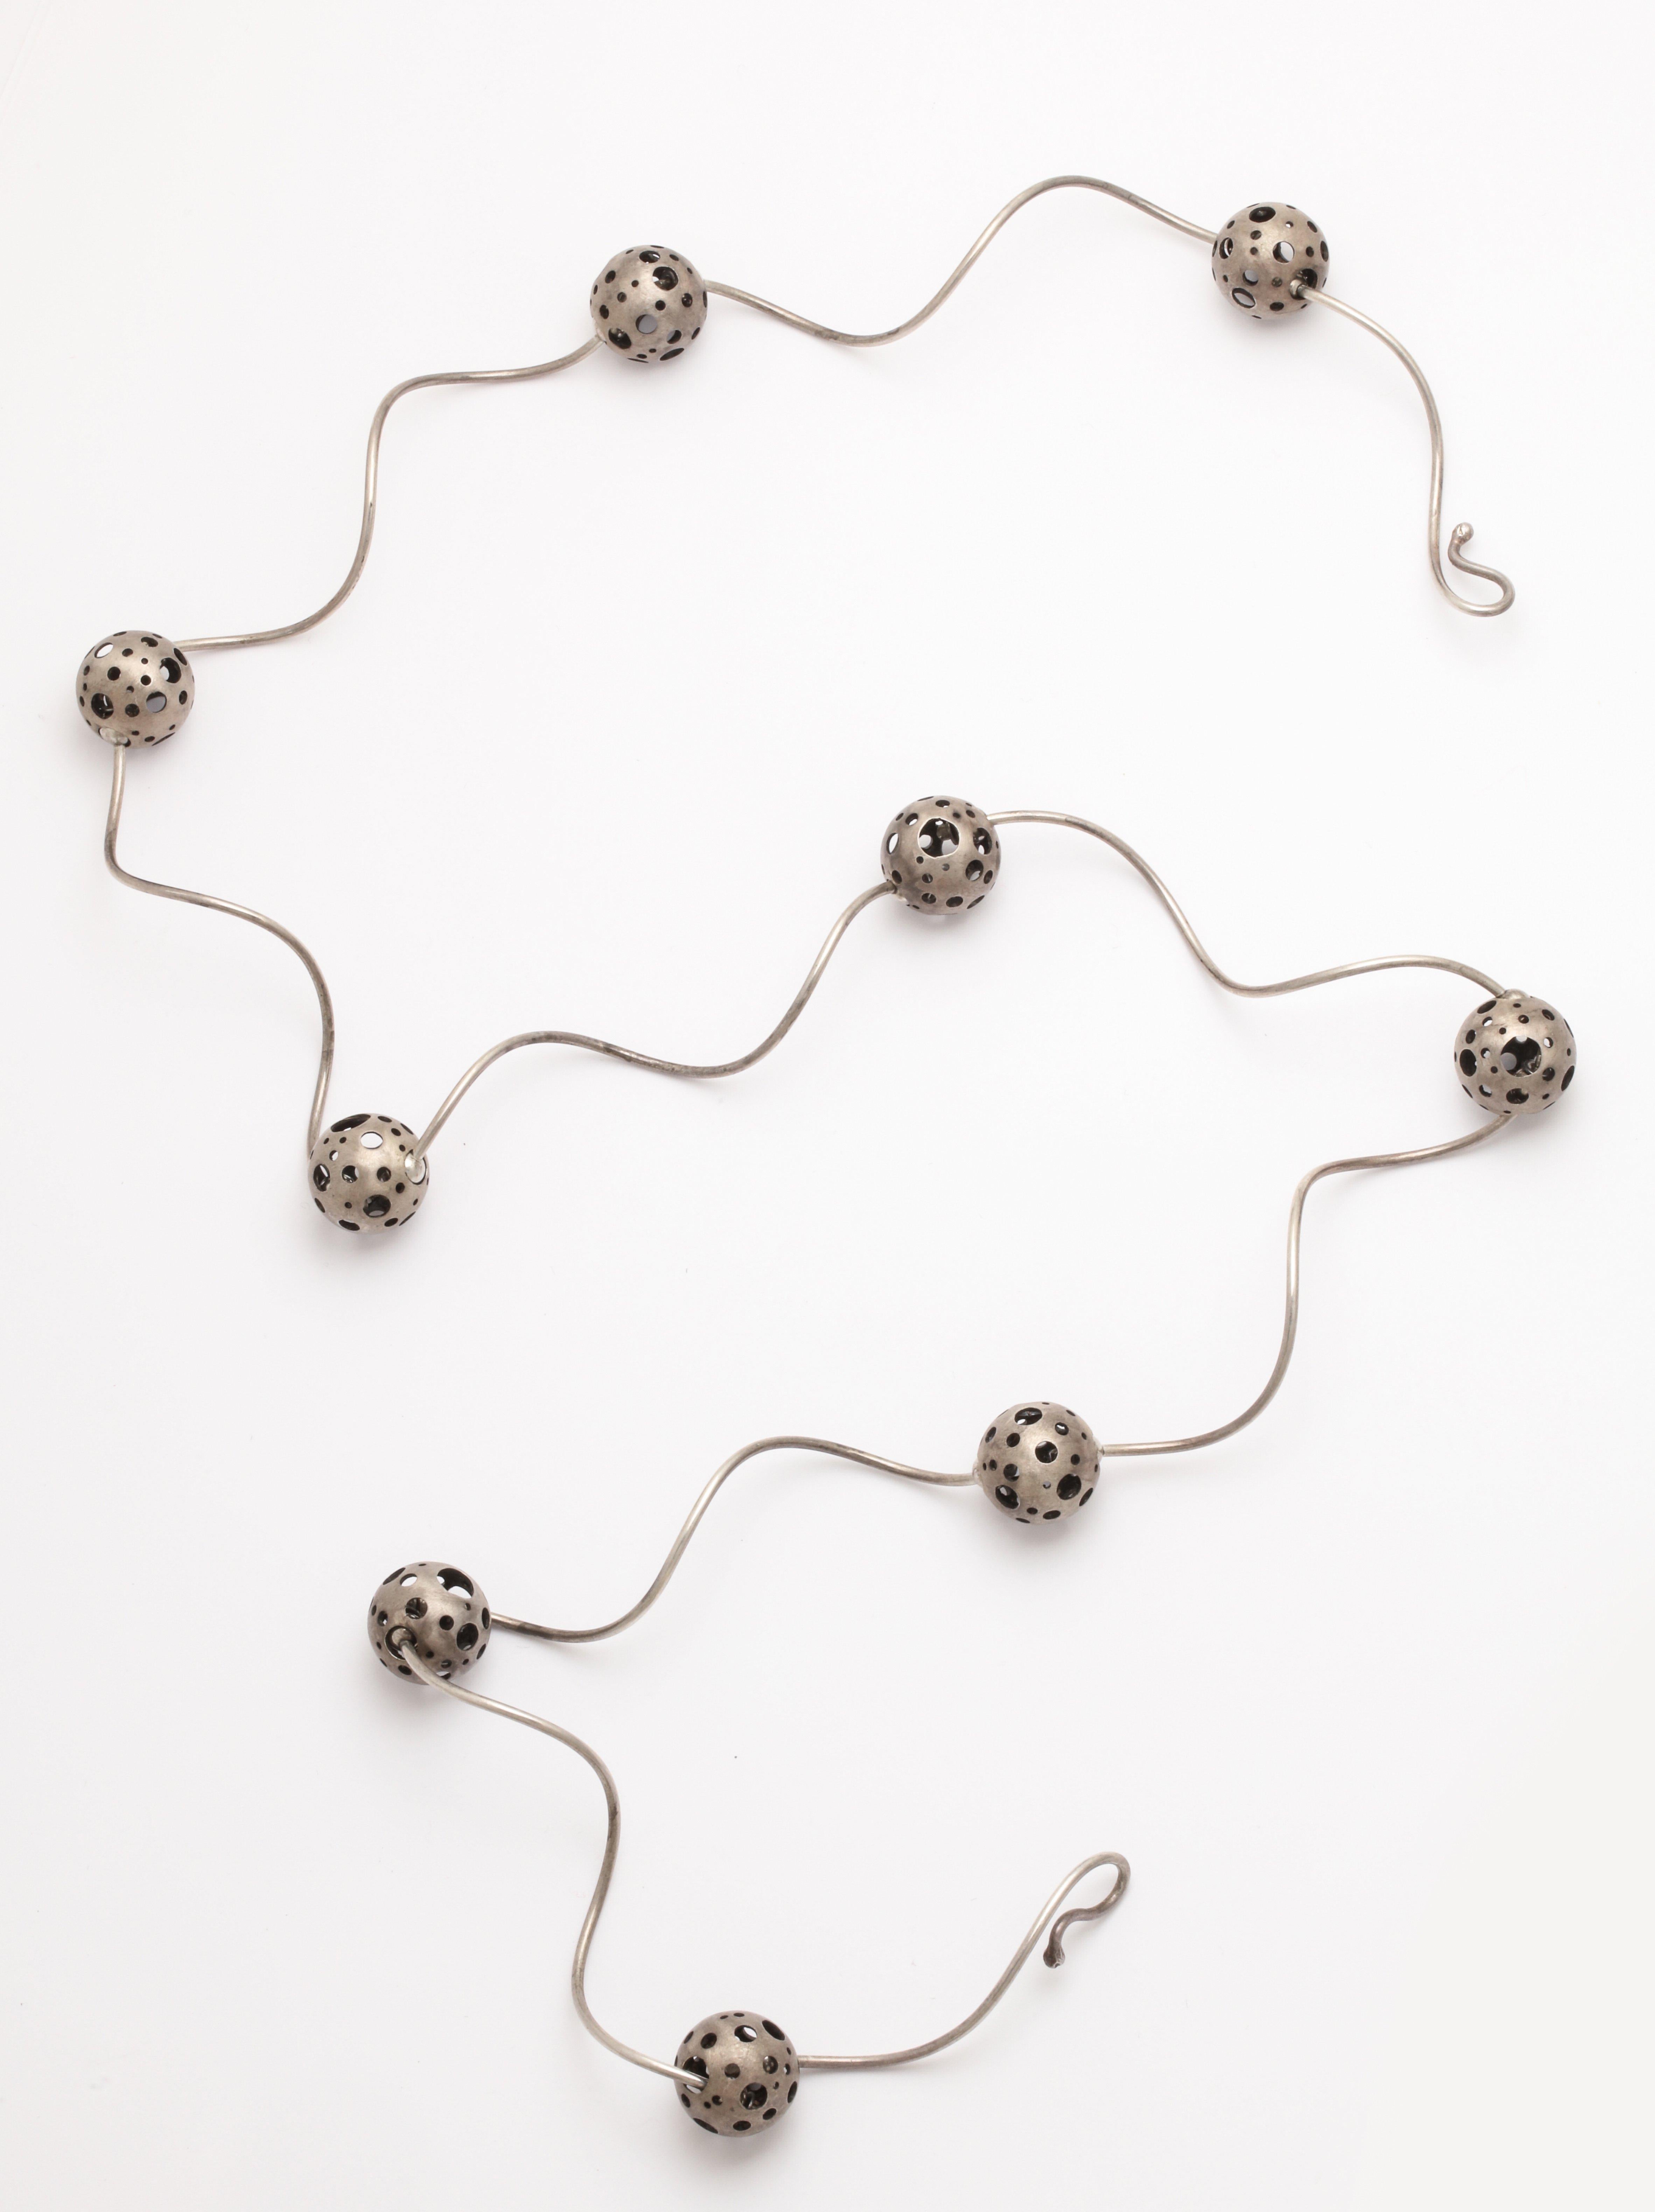 Elizabeth Garvin Modernist Silver Necklace For Sale 1